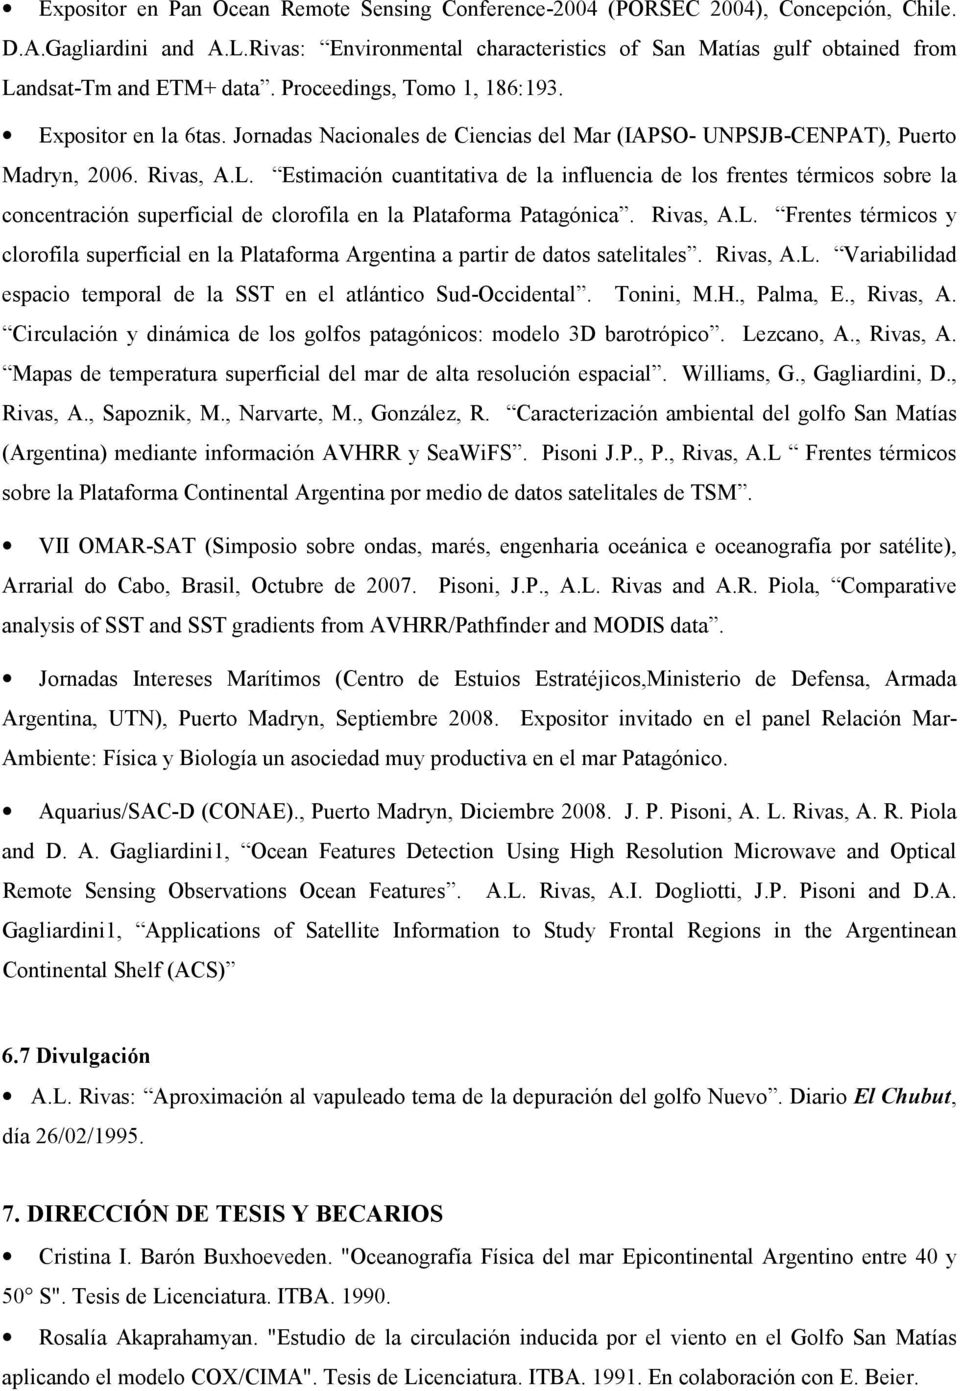 Jornadas Nacionales de Ciencias del Mar (IAPSO- UNPSJB-CENPAT), Puerto Madryn, 2006. Rivas, A.L.